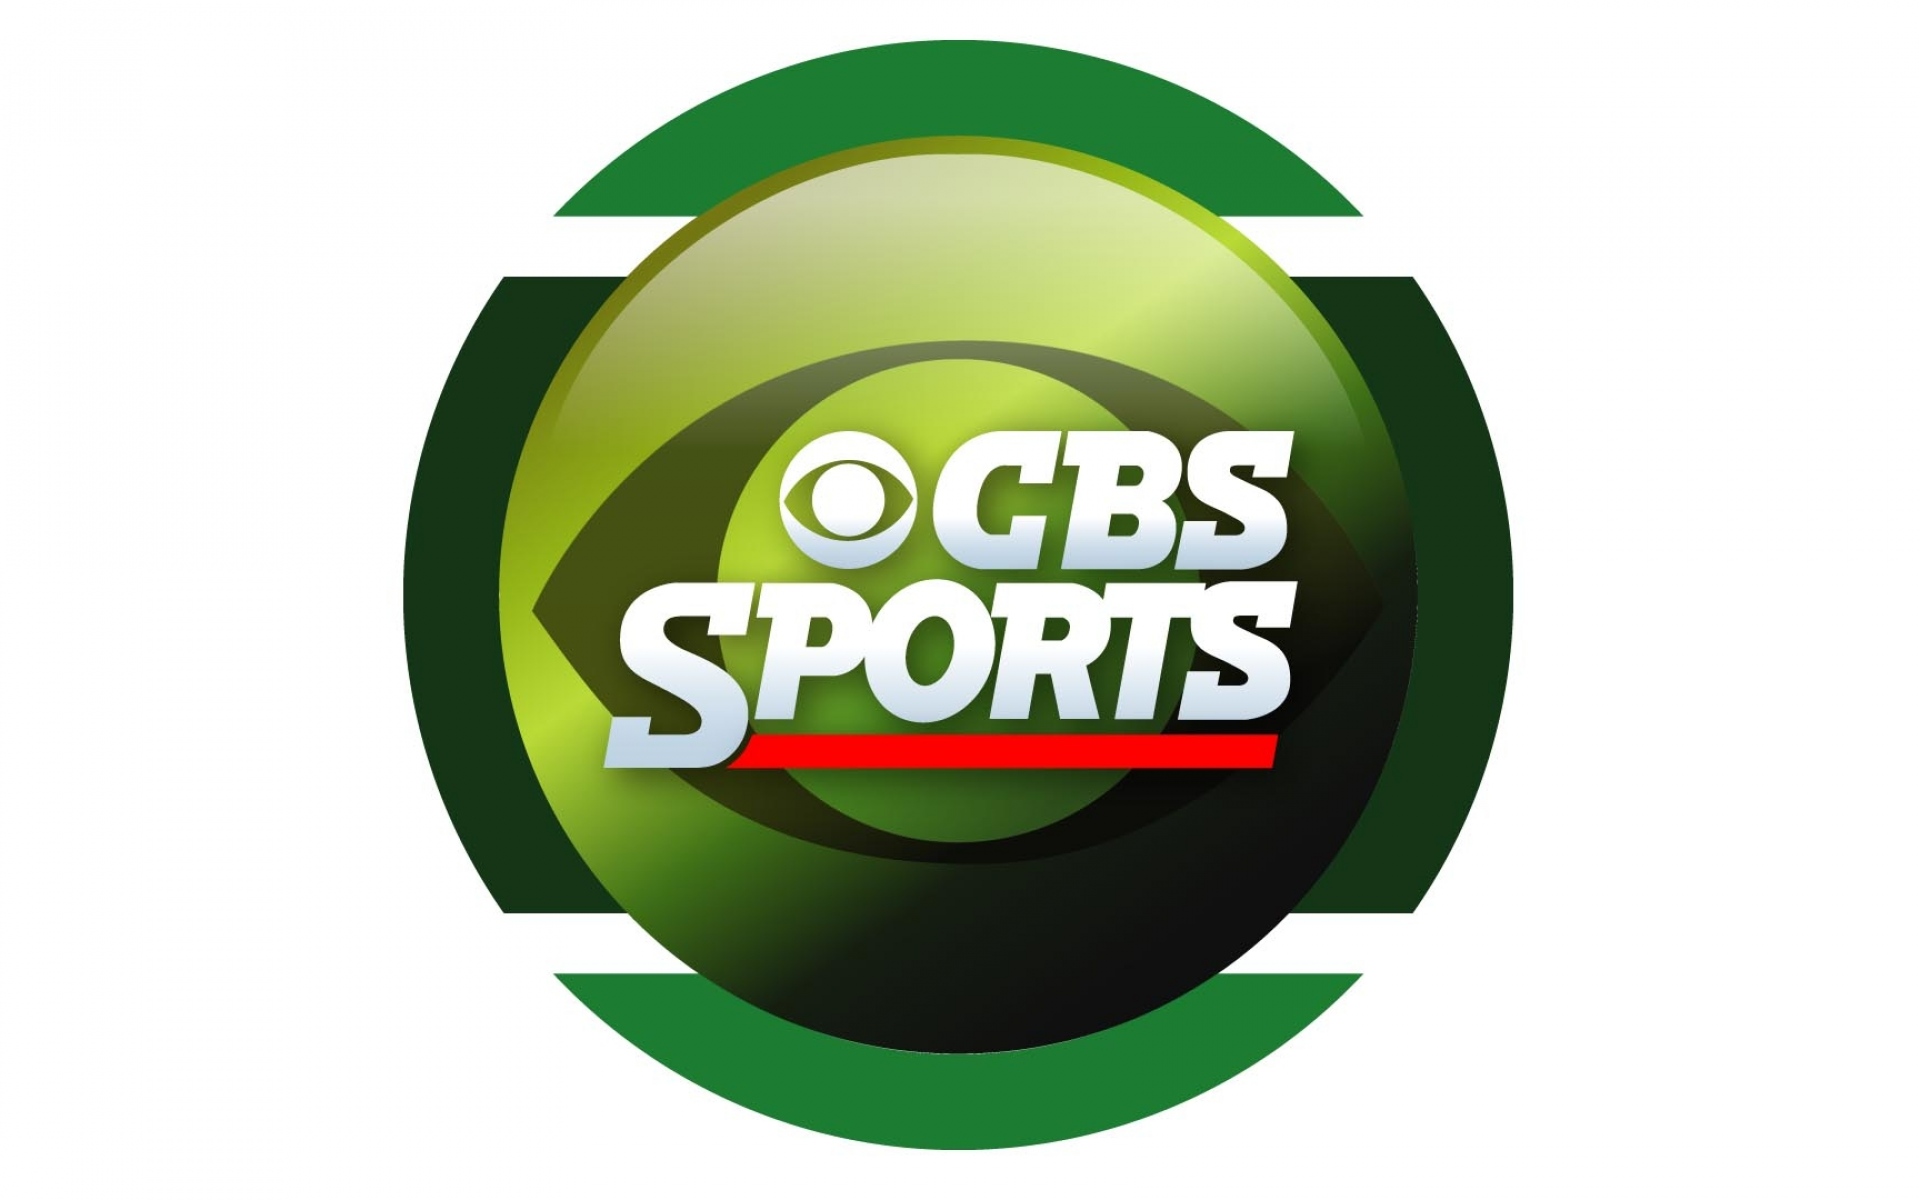 Canli izle cbs sports. CBS Sports. CBS Sports logo. CBS Sports Network us. CBS Sports ведущая.